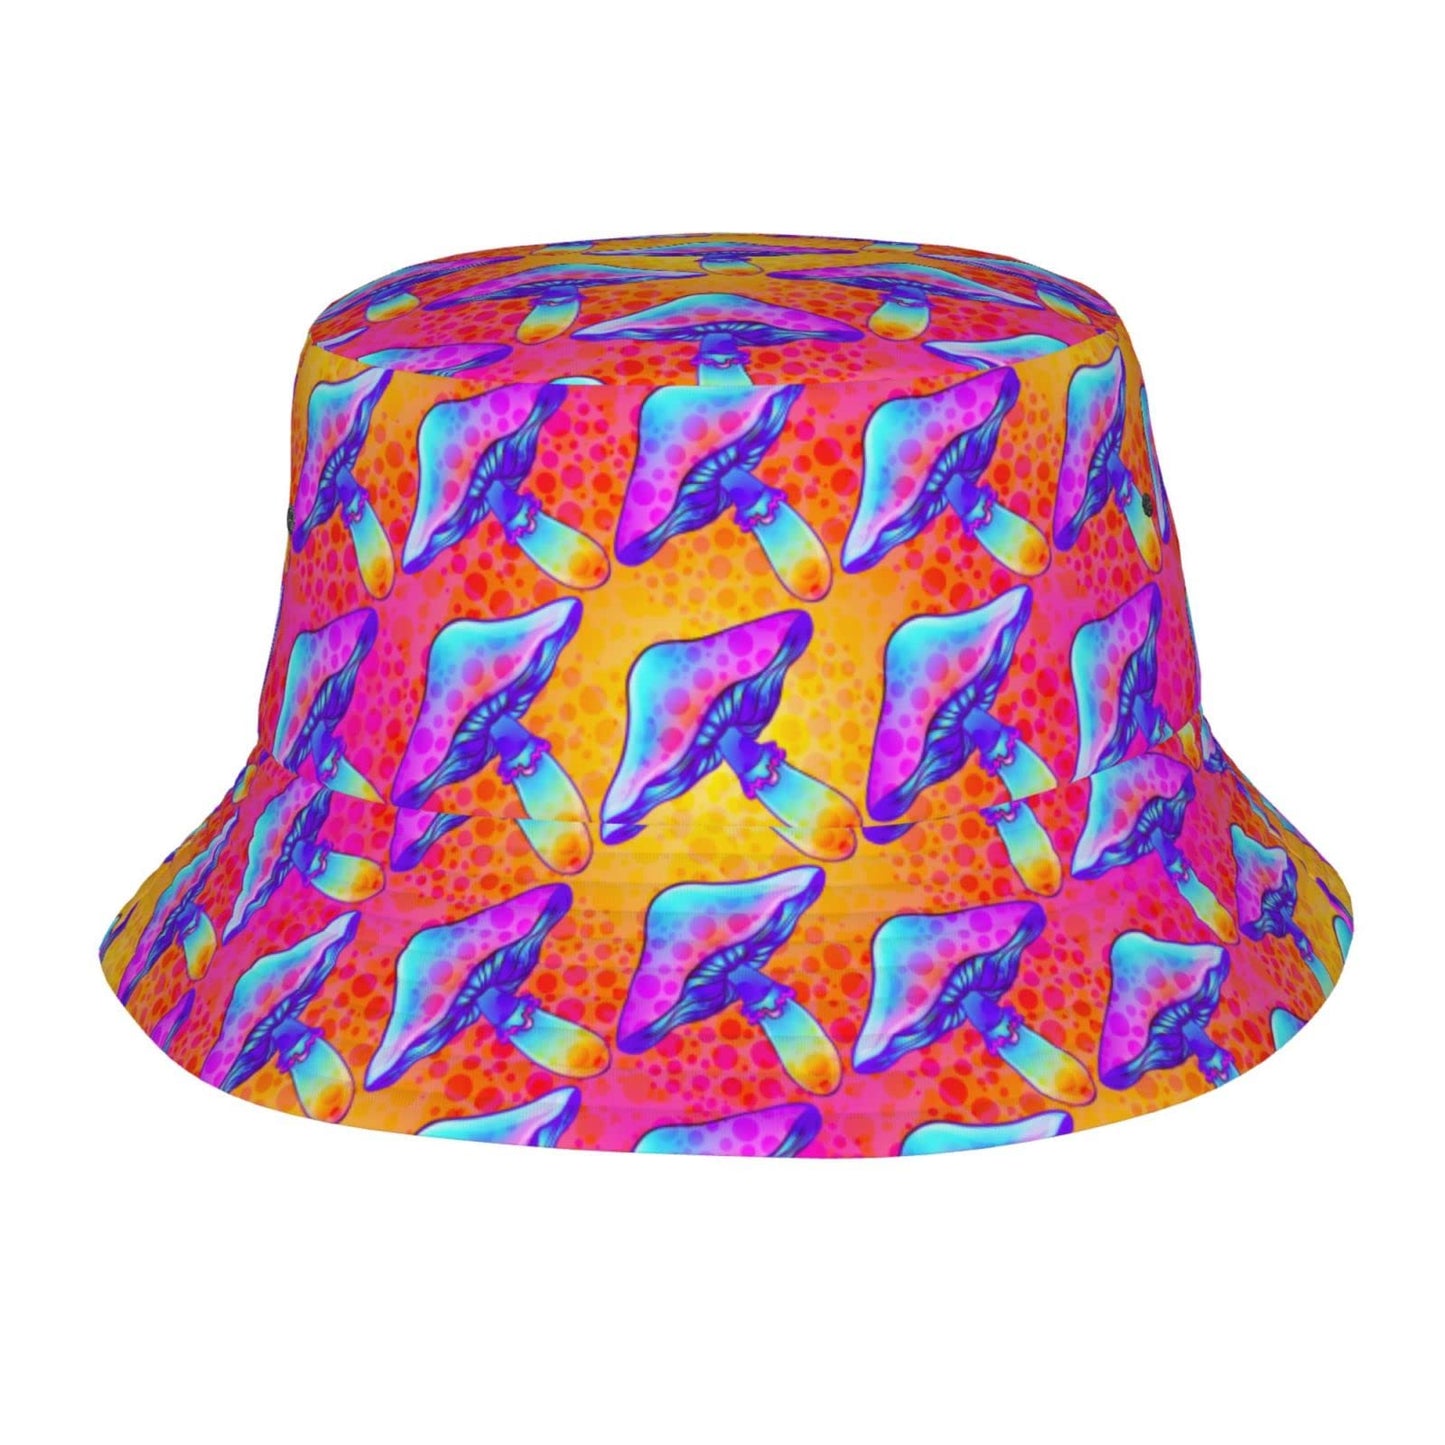 Psychedelic Mushroom Trippy Hippie Alien Bucket Hat, Fisherman Hats Summer Outdoor Packable Cap Travel Beach Sun Hat